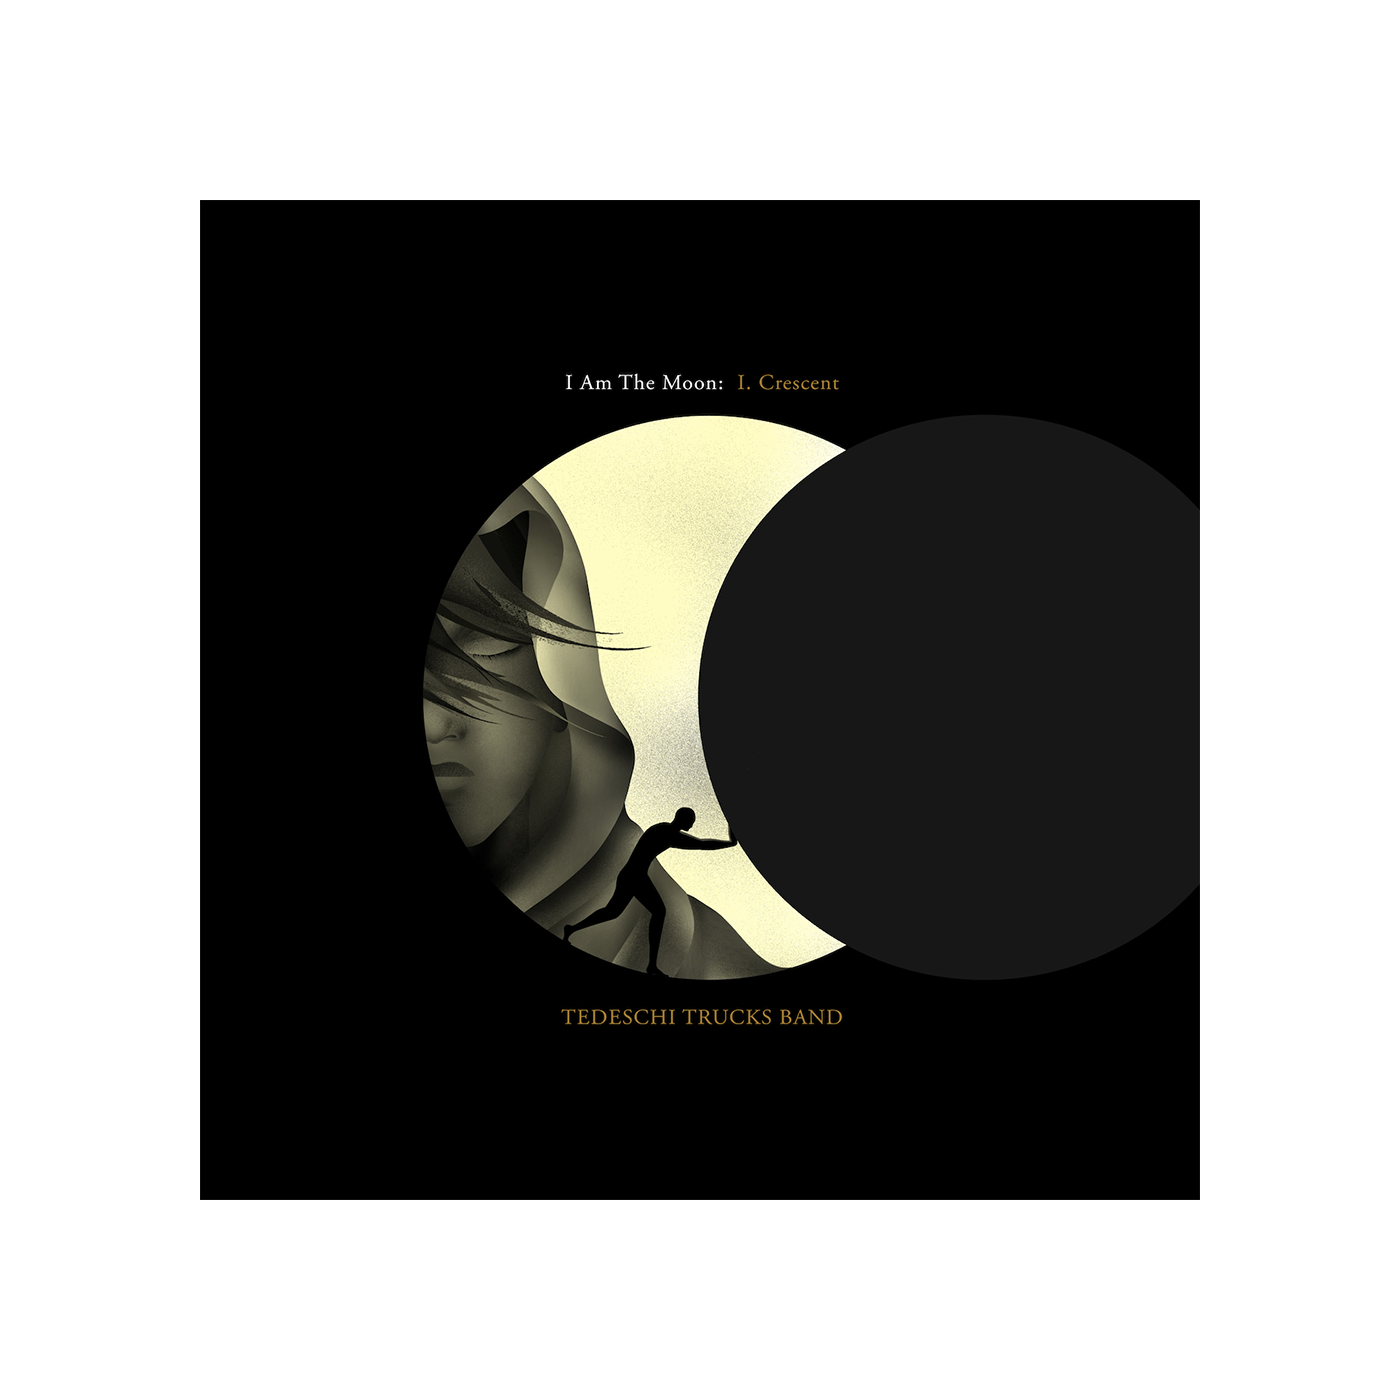 I Am The Moon: I. Crescent Digital Album